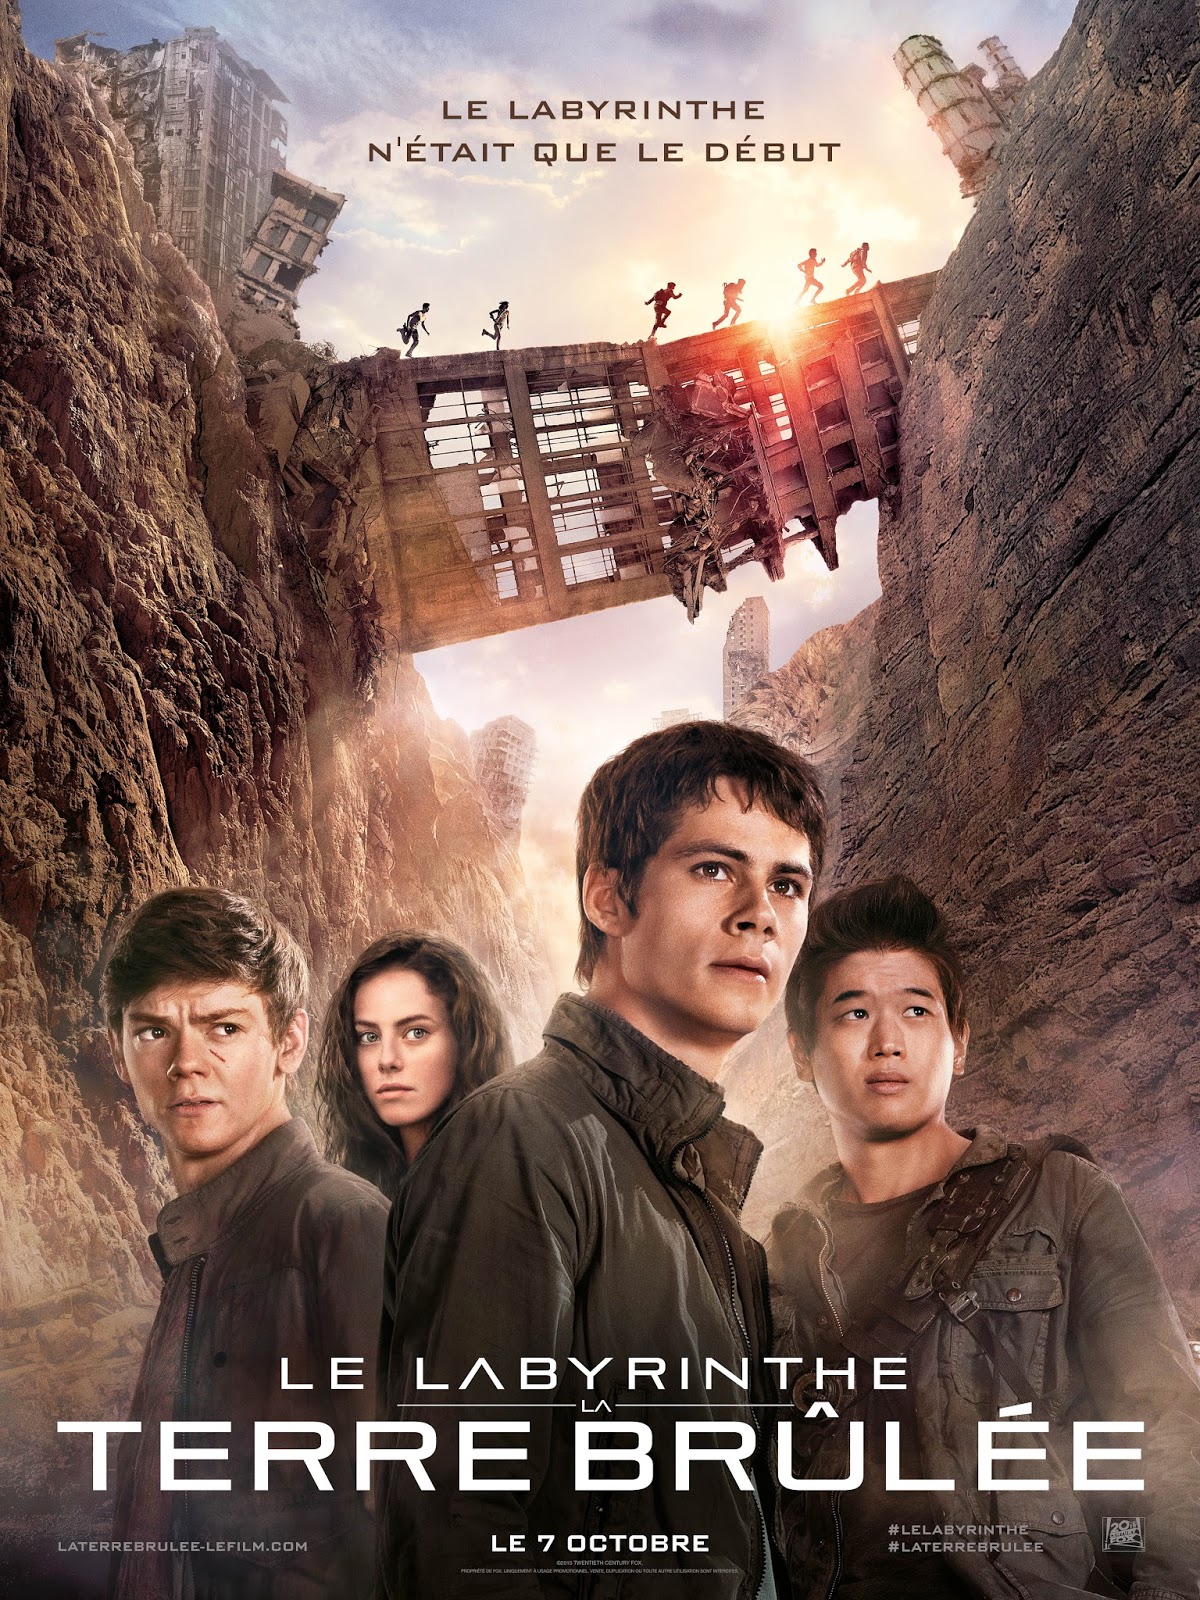 Le Labyrinthe 1 Gratuit Cinéma : Le Labyrinthe, la terre brûlée (critique) - DAME SKARLETTE